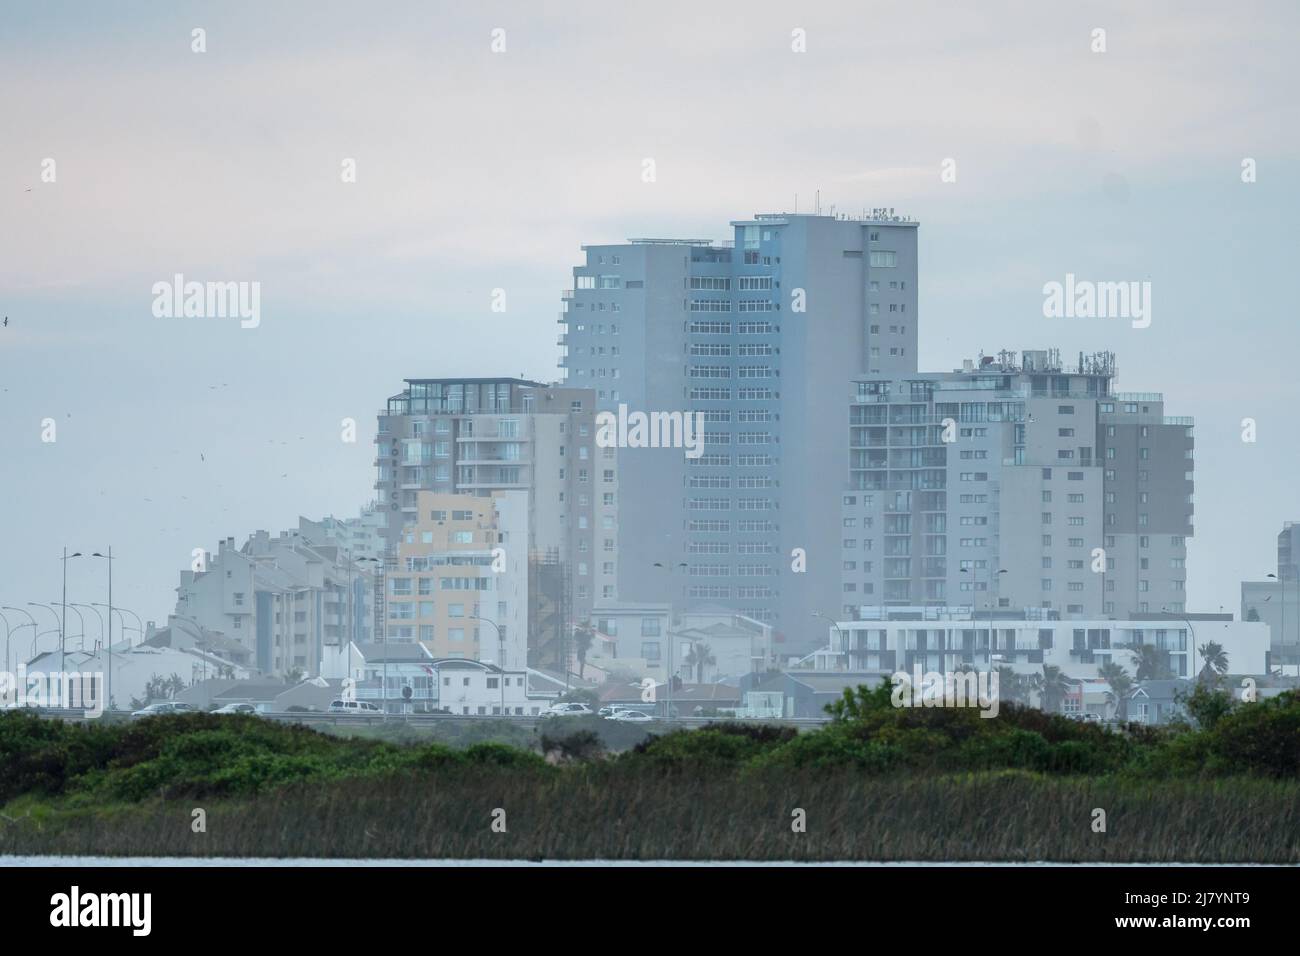 Bloubergstrand paisaje urbano de edificios, apartamentos y condominios en la carretera frente a la playa Ciudad del Cabo, Sudáfrica Foto de stock